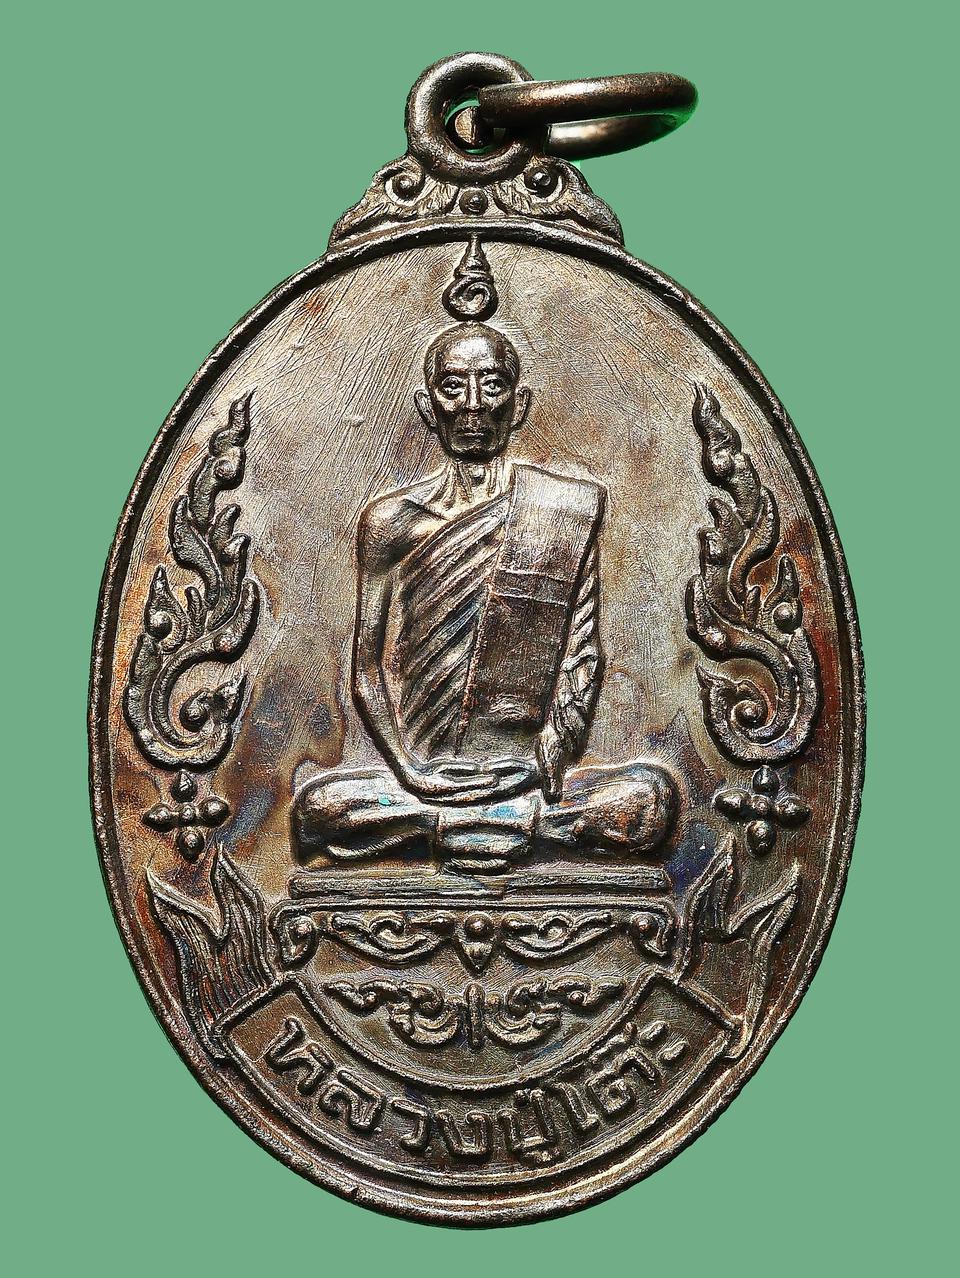 เหรียญหลวงปู่โต๊ะ วัดประดู่ฉิมพลี รุ่นเยือนอินเดีย ปี พ.ศ.2519...สวยเดิมๆ